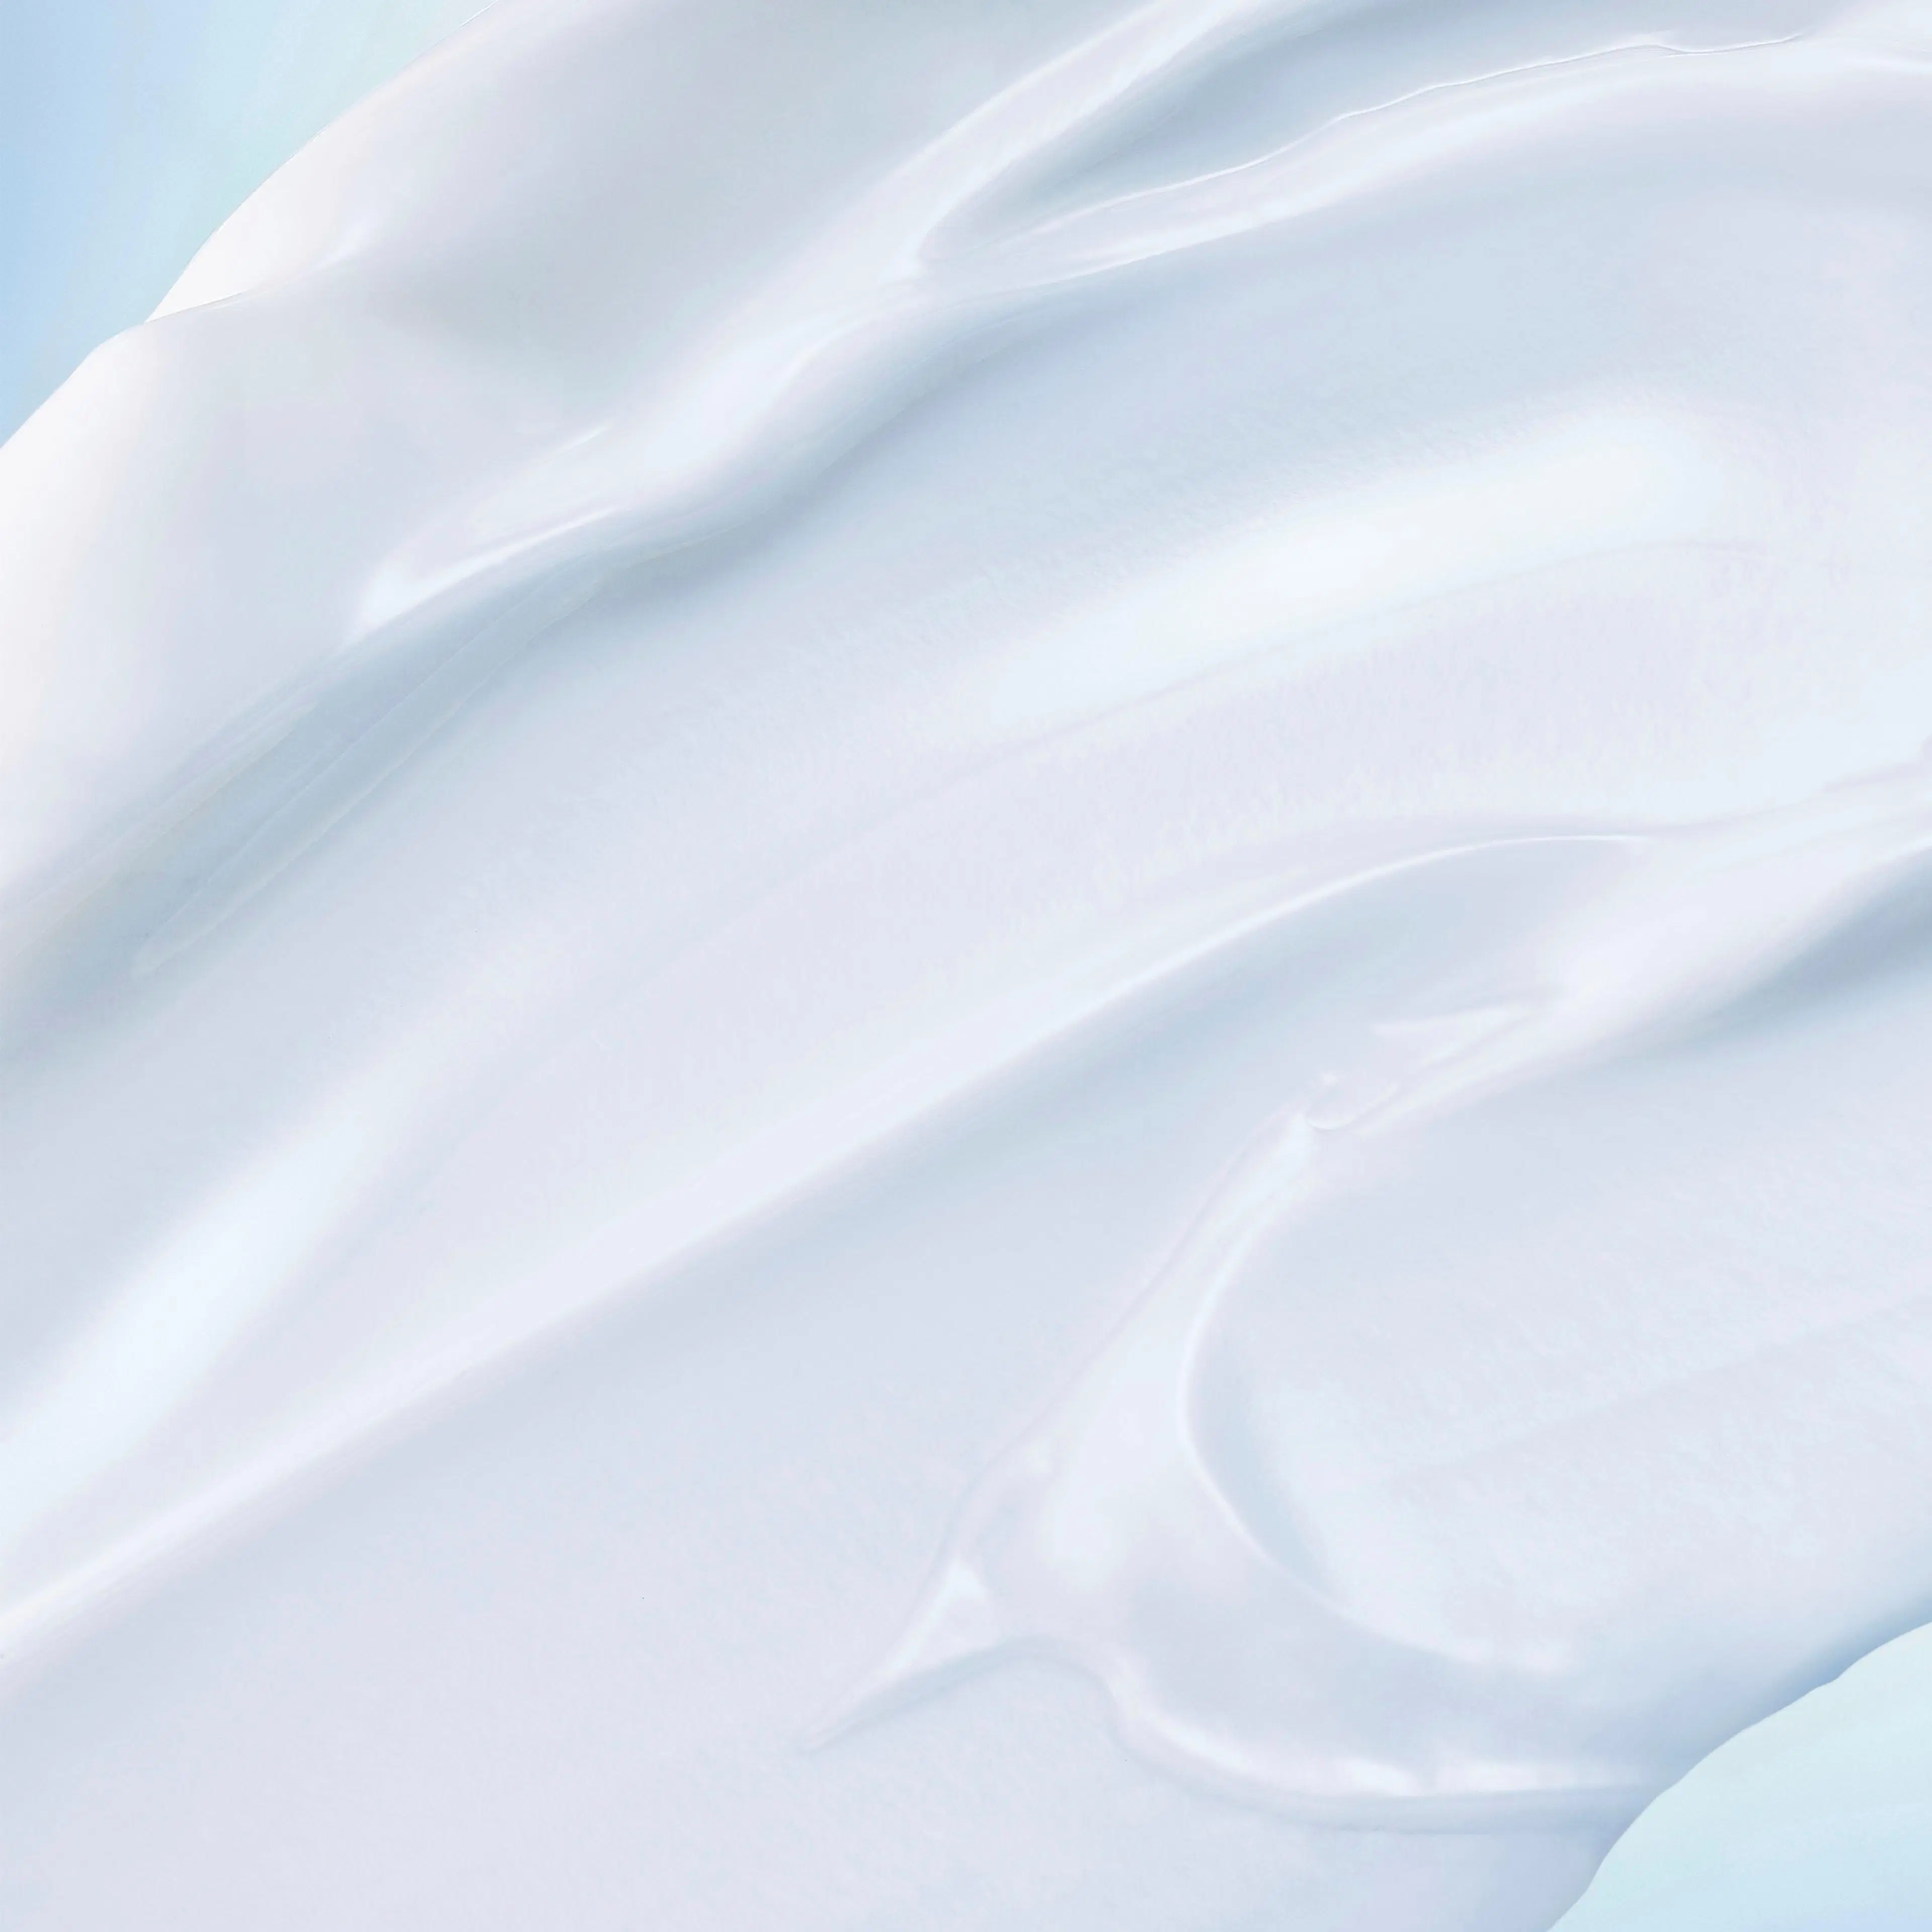 Biotherm Cera Repair Barrier Cream -kosteusvoide 50 ml